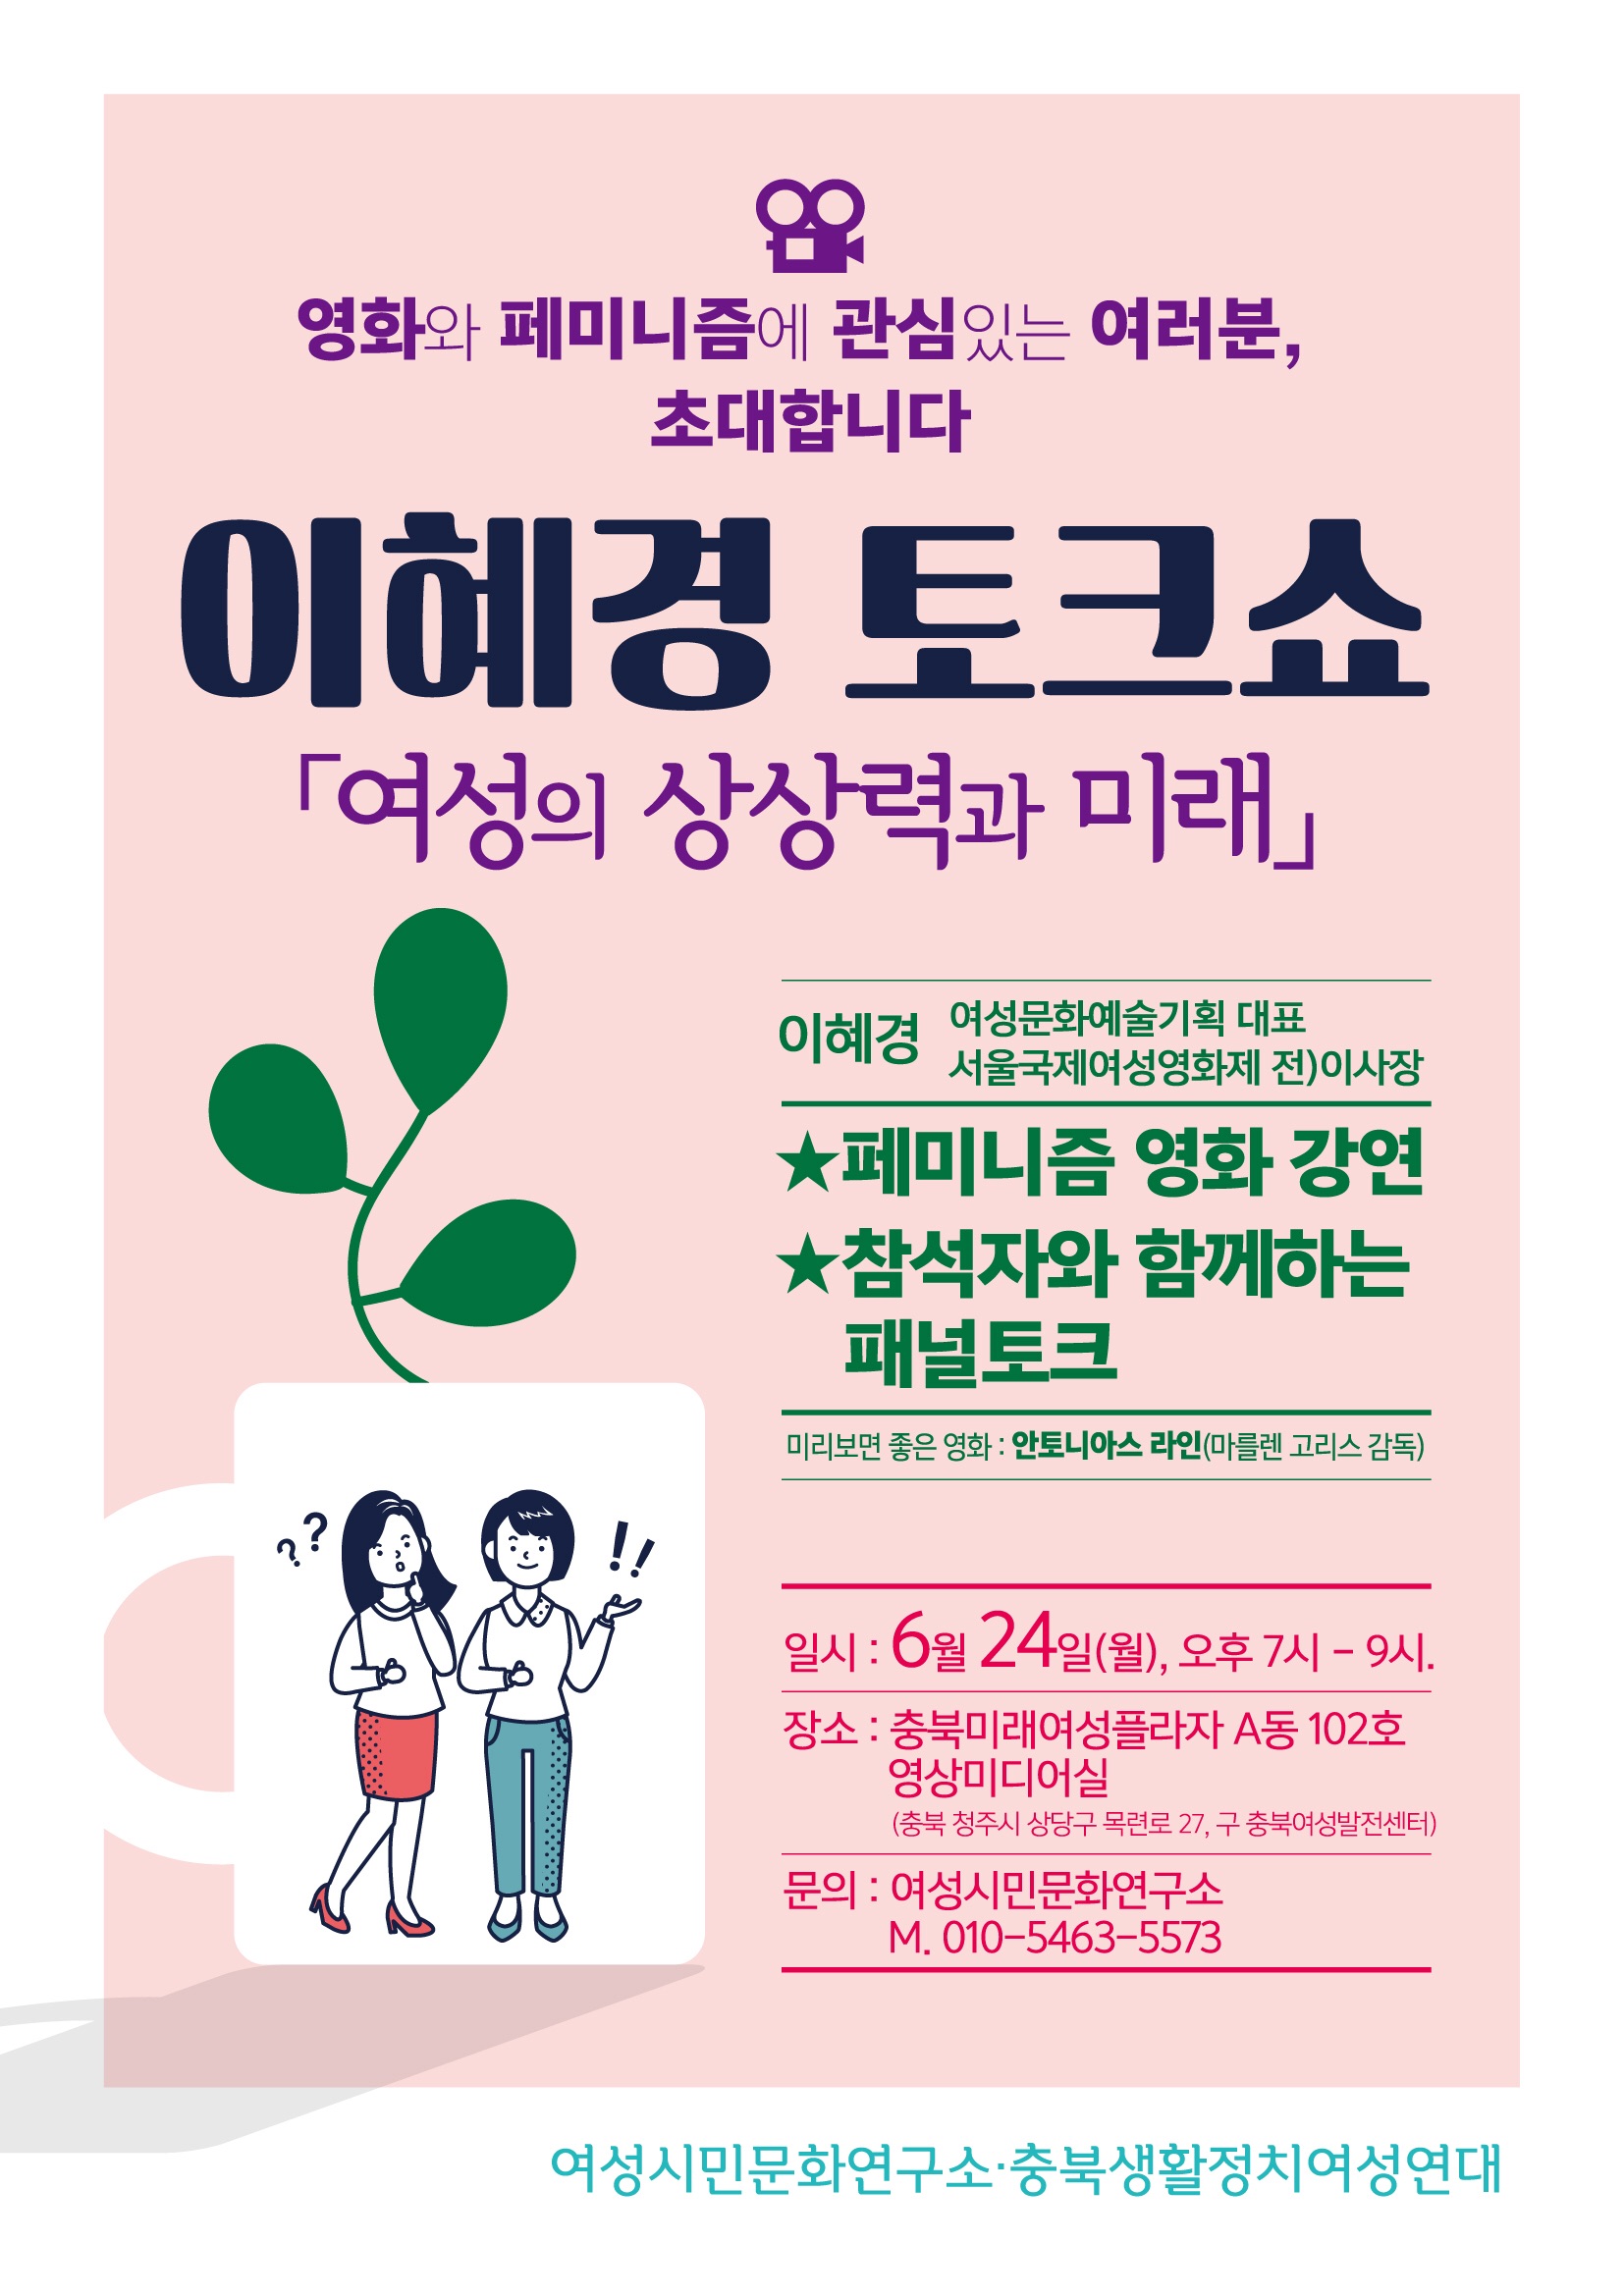 <여성의 상상력과 미래> 이혜경 토크쇼 6/24(월) 19시 [첨부 이미지1]